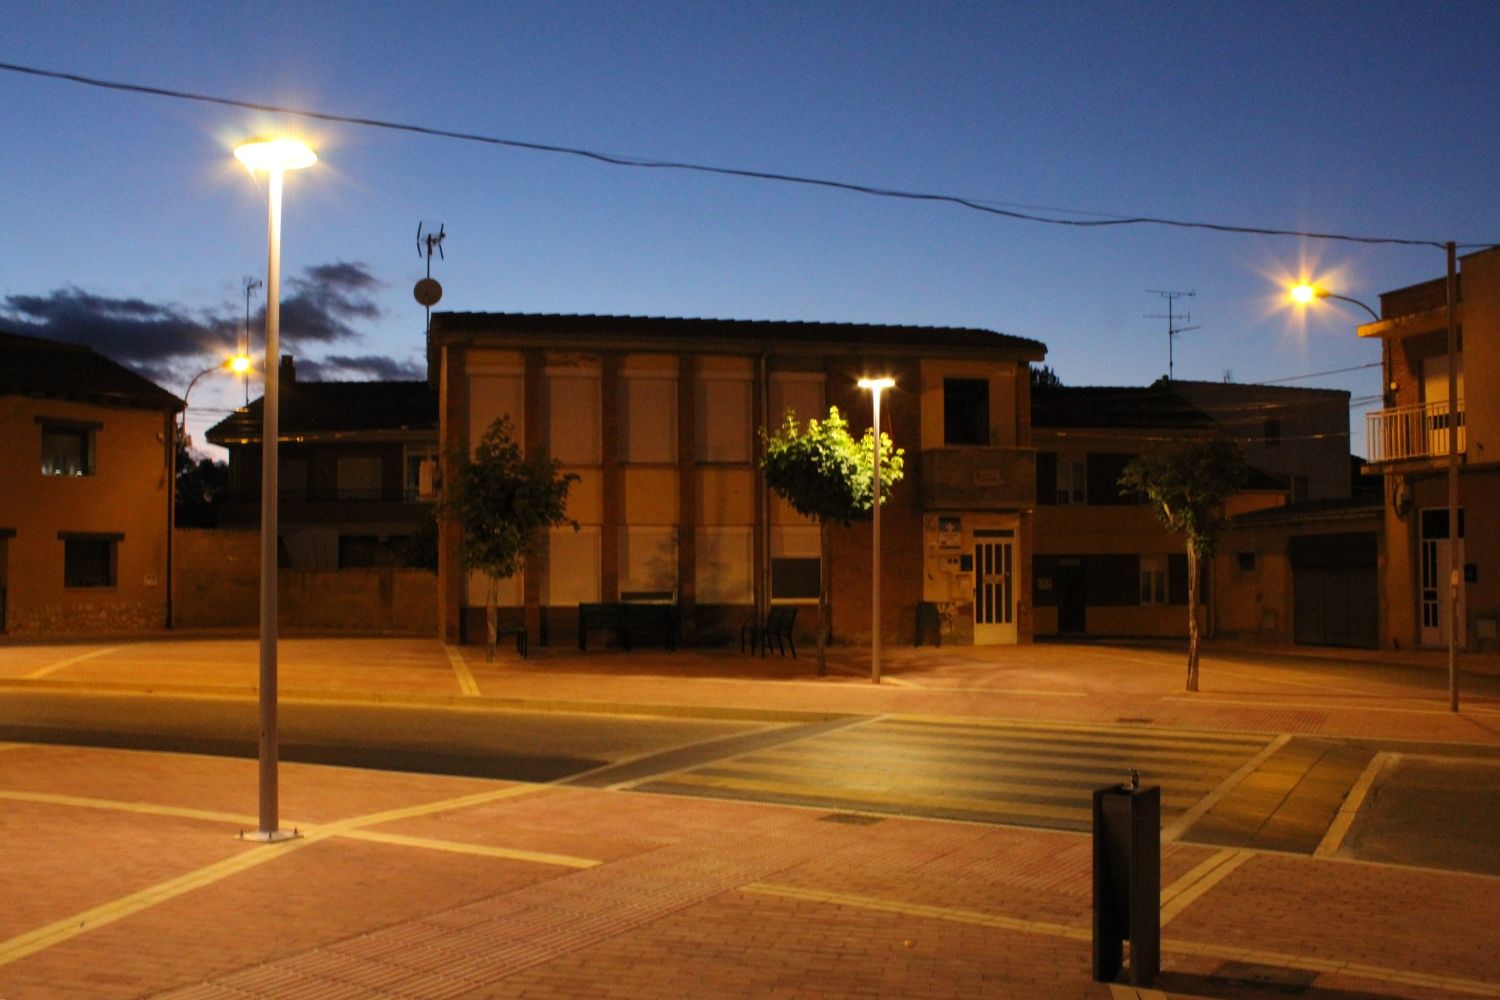  La Plaza de Villabalter en San Andrés del Rabanedo (León) inaugurada tras completar su remodelación 